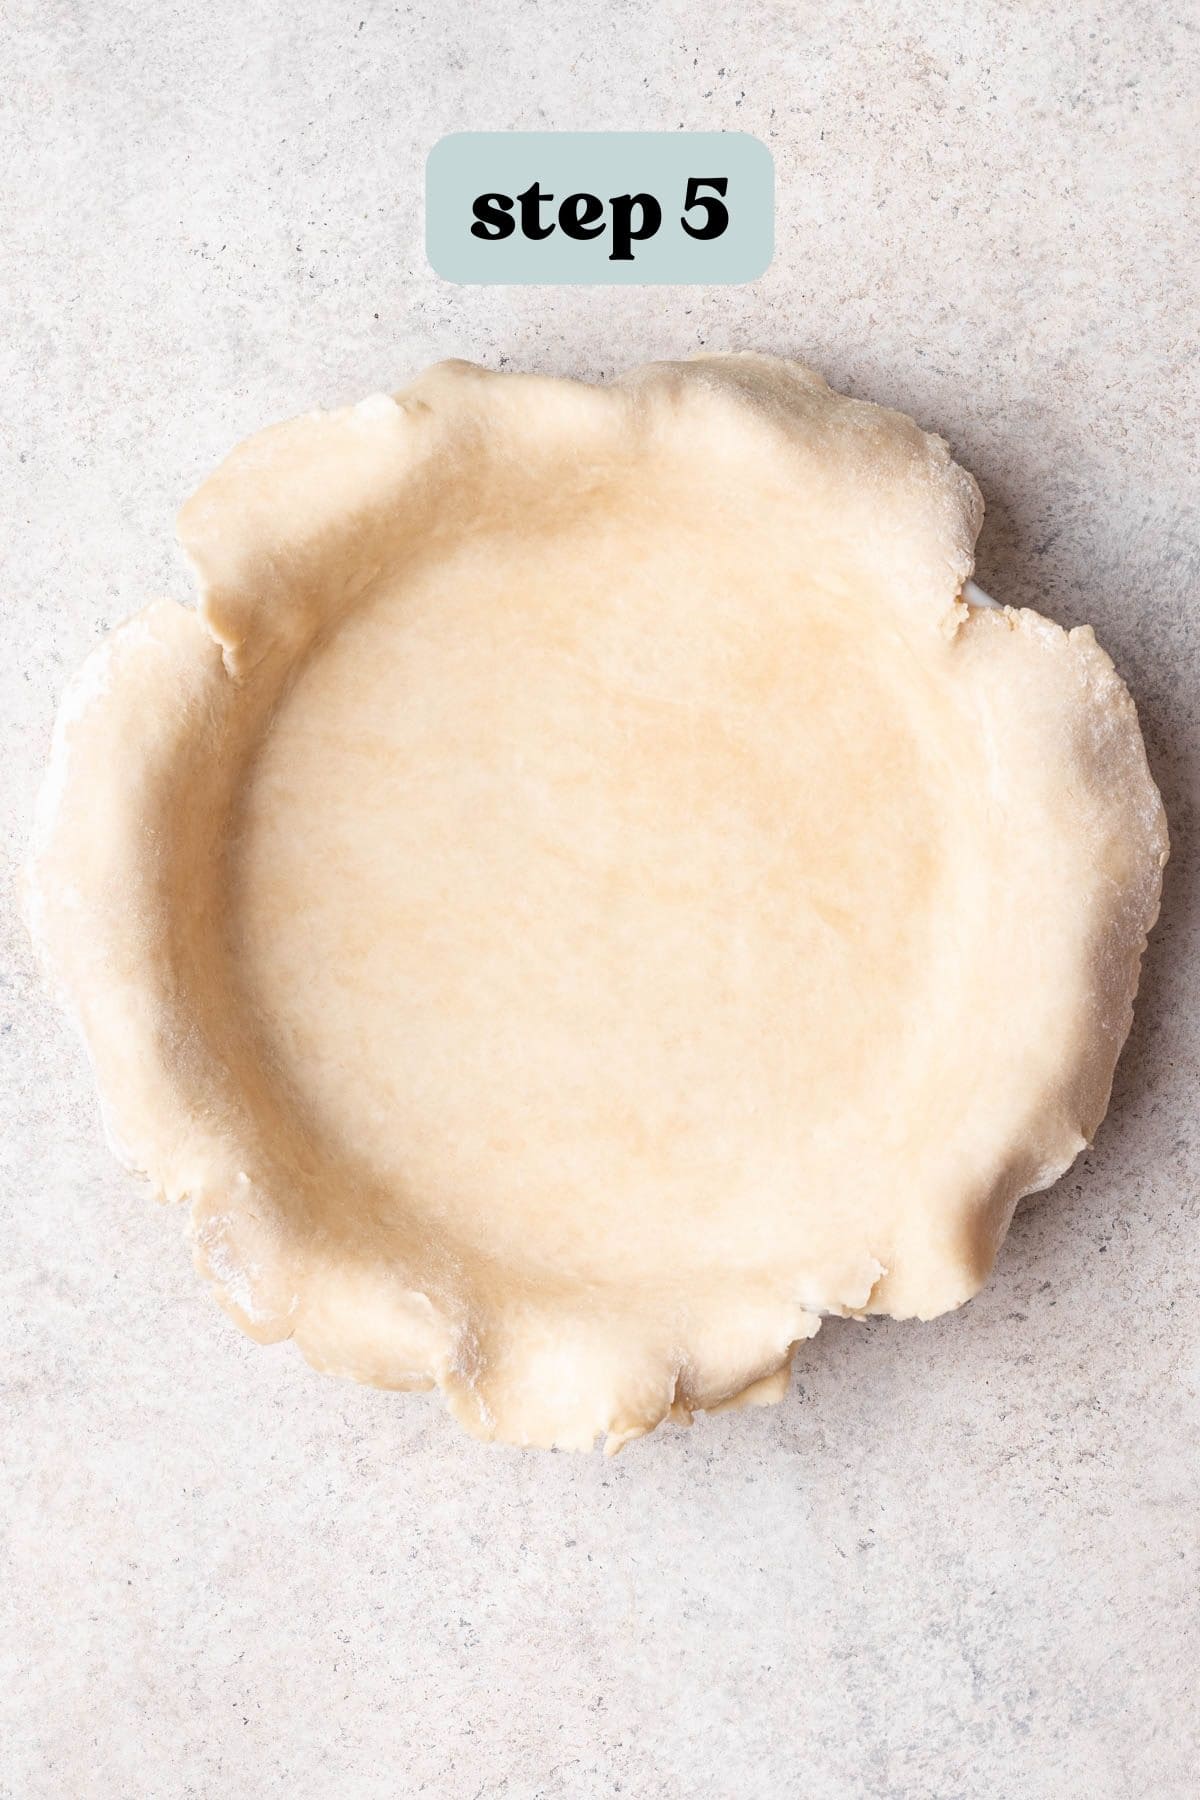 Pie crust in pie dish before trimming edges.